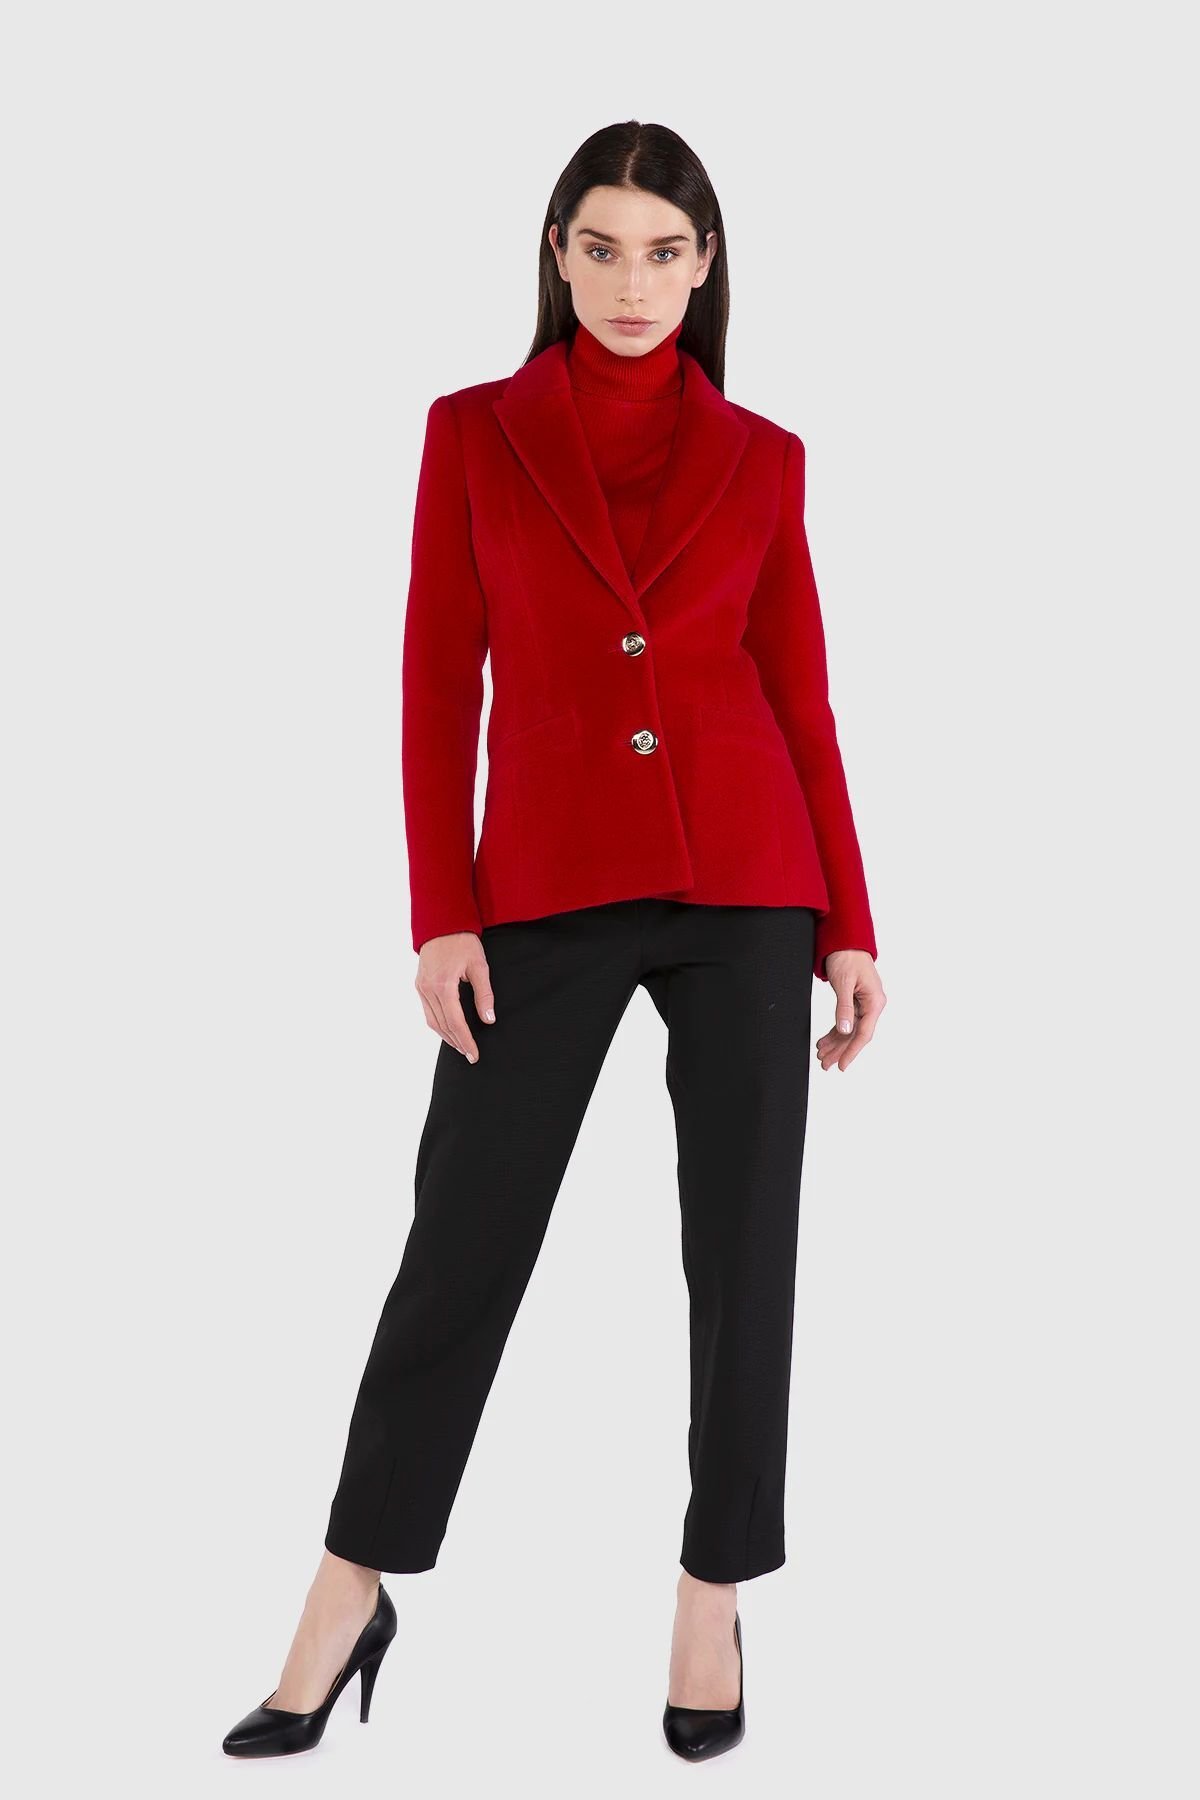 Metal Düğmeli Kaşe Kumaş Blazer Kırmızı Ceket